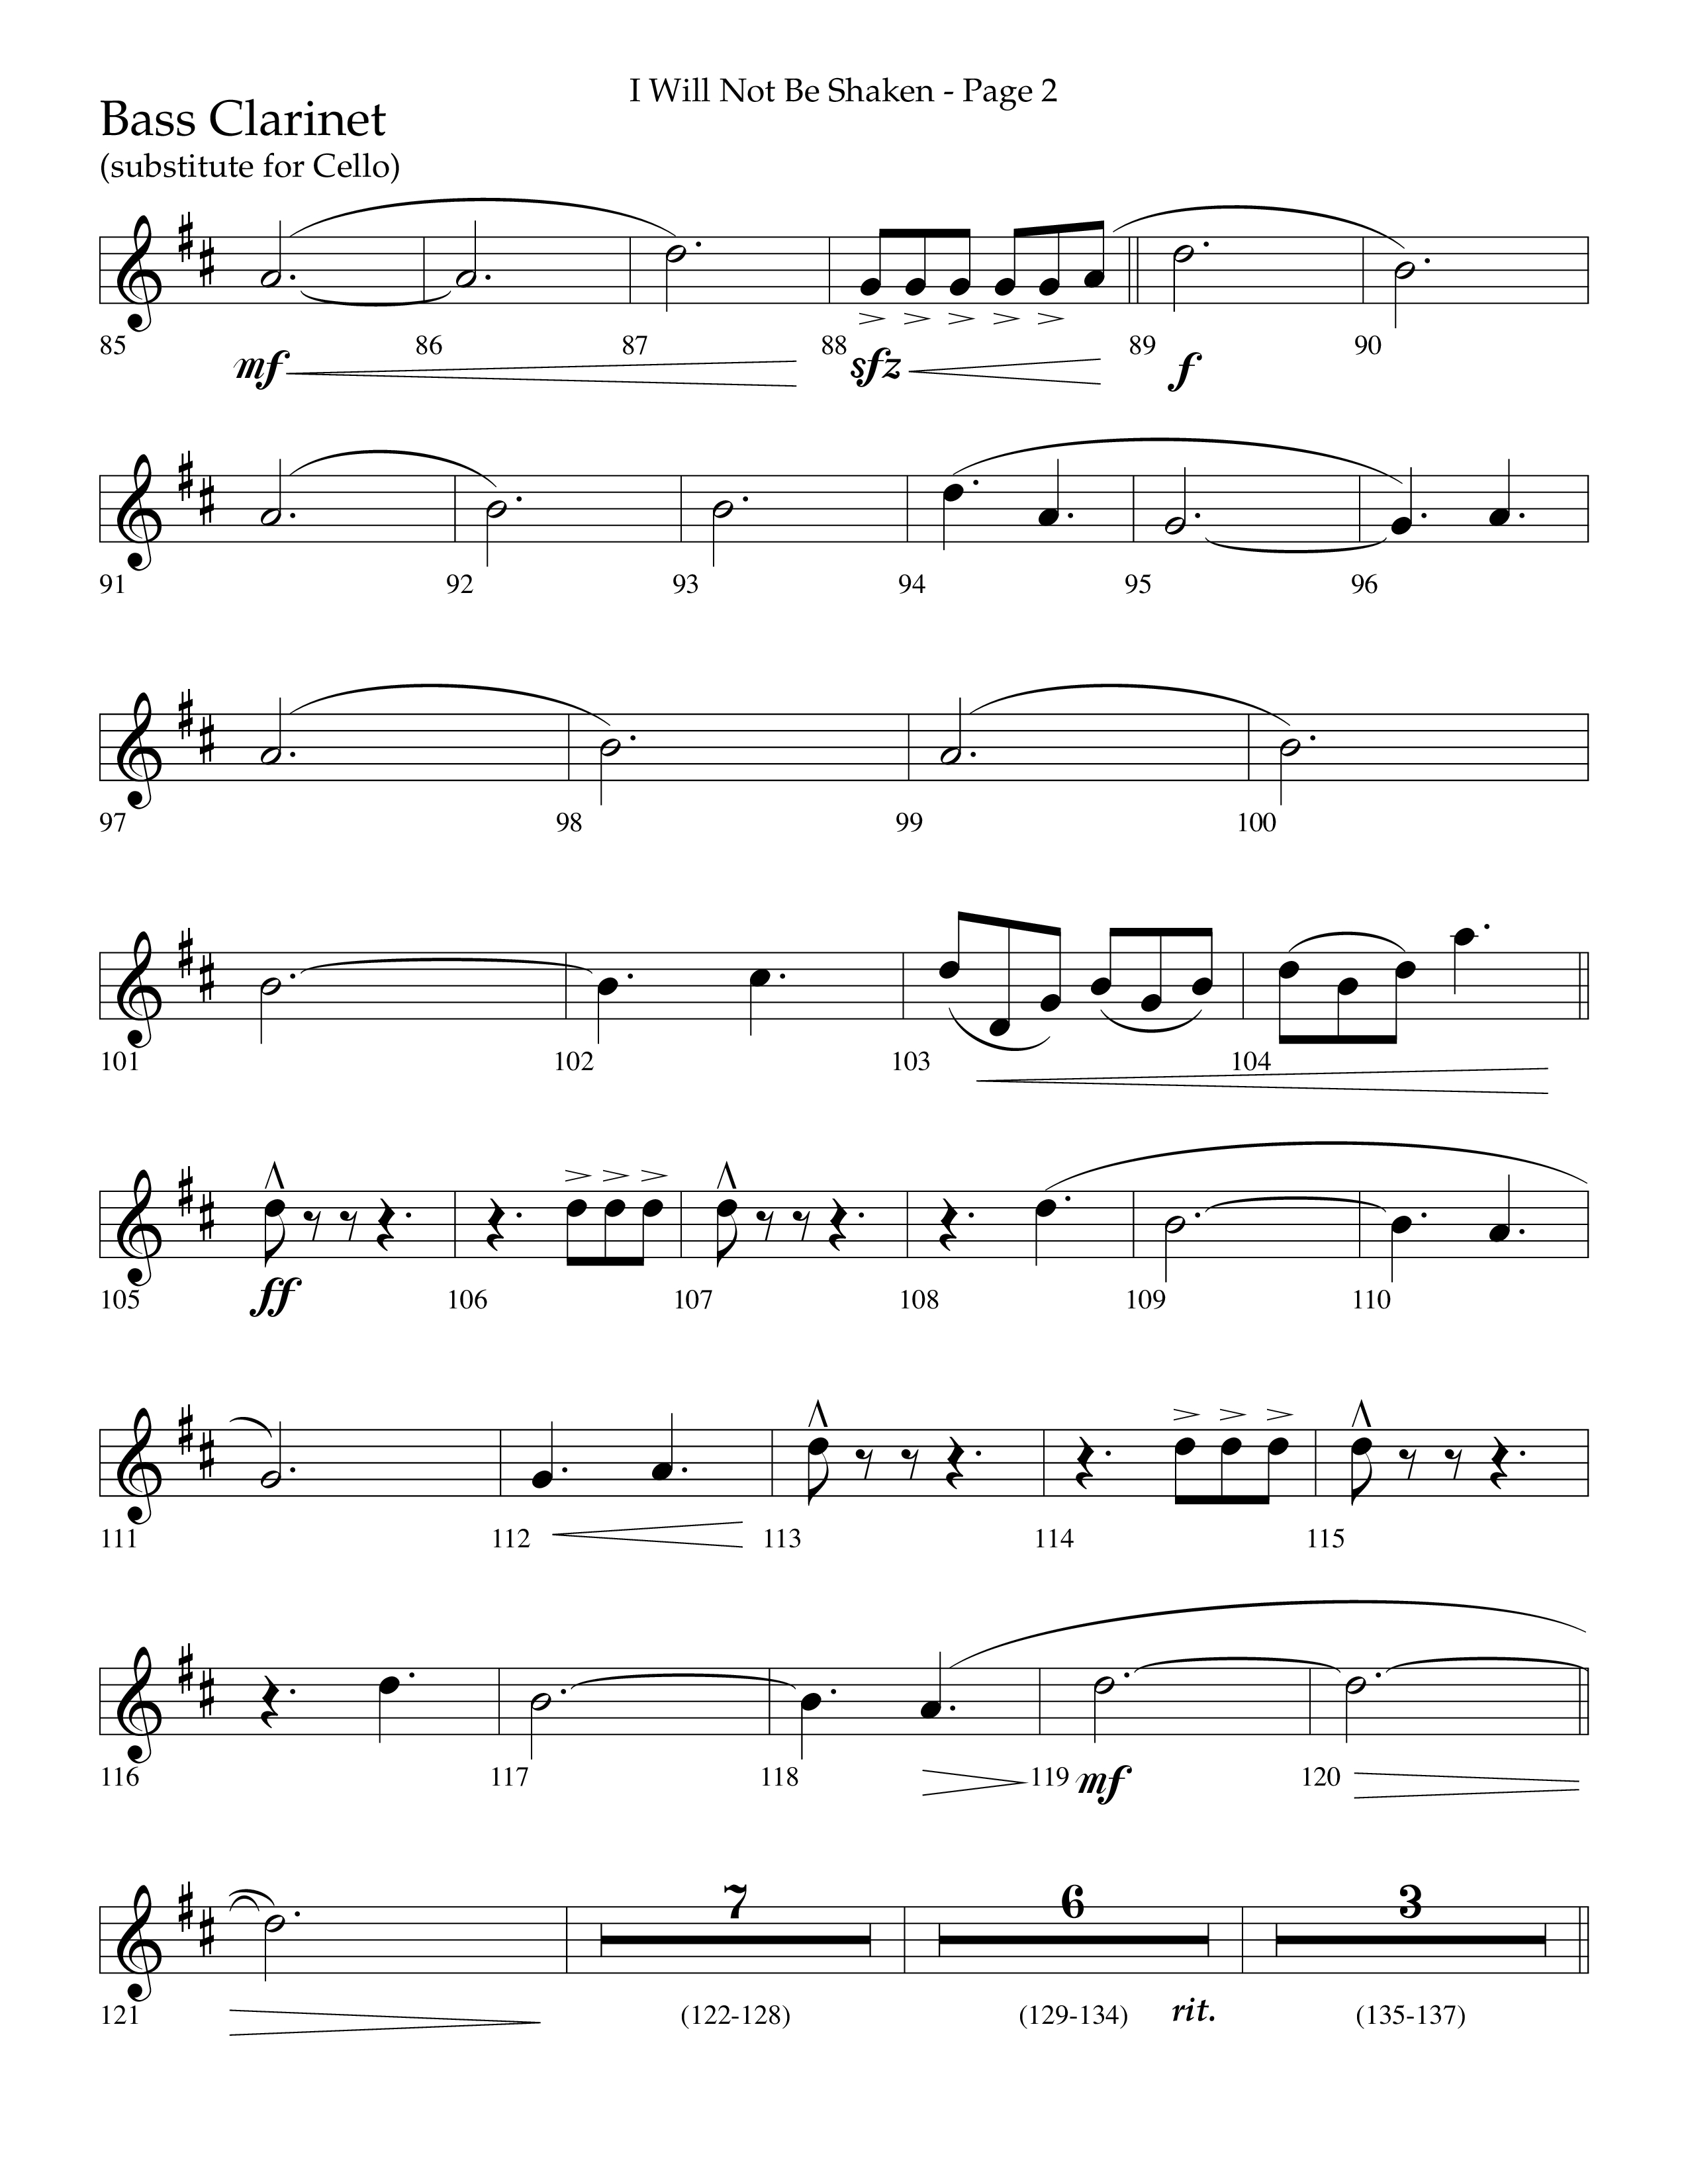 I Will Not Be Shaken (Choral Anthem SATB) Bass Clarinet (Lifeway Choral / Arr. Cliff Duren)